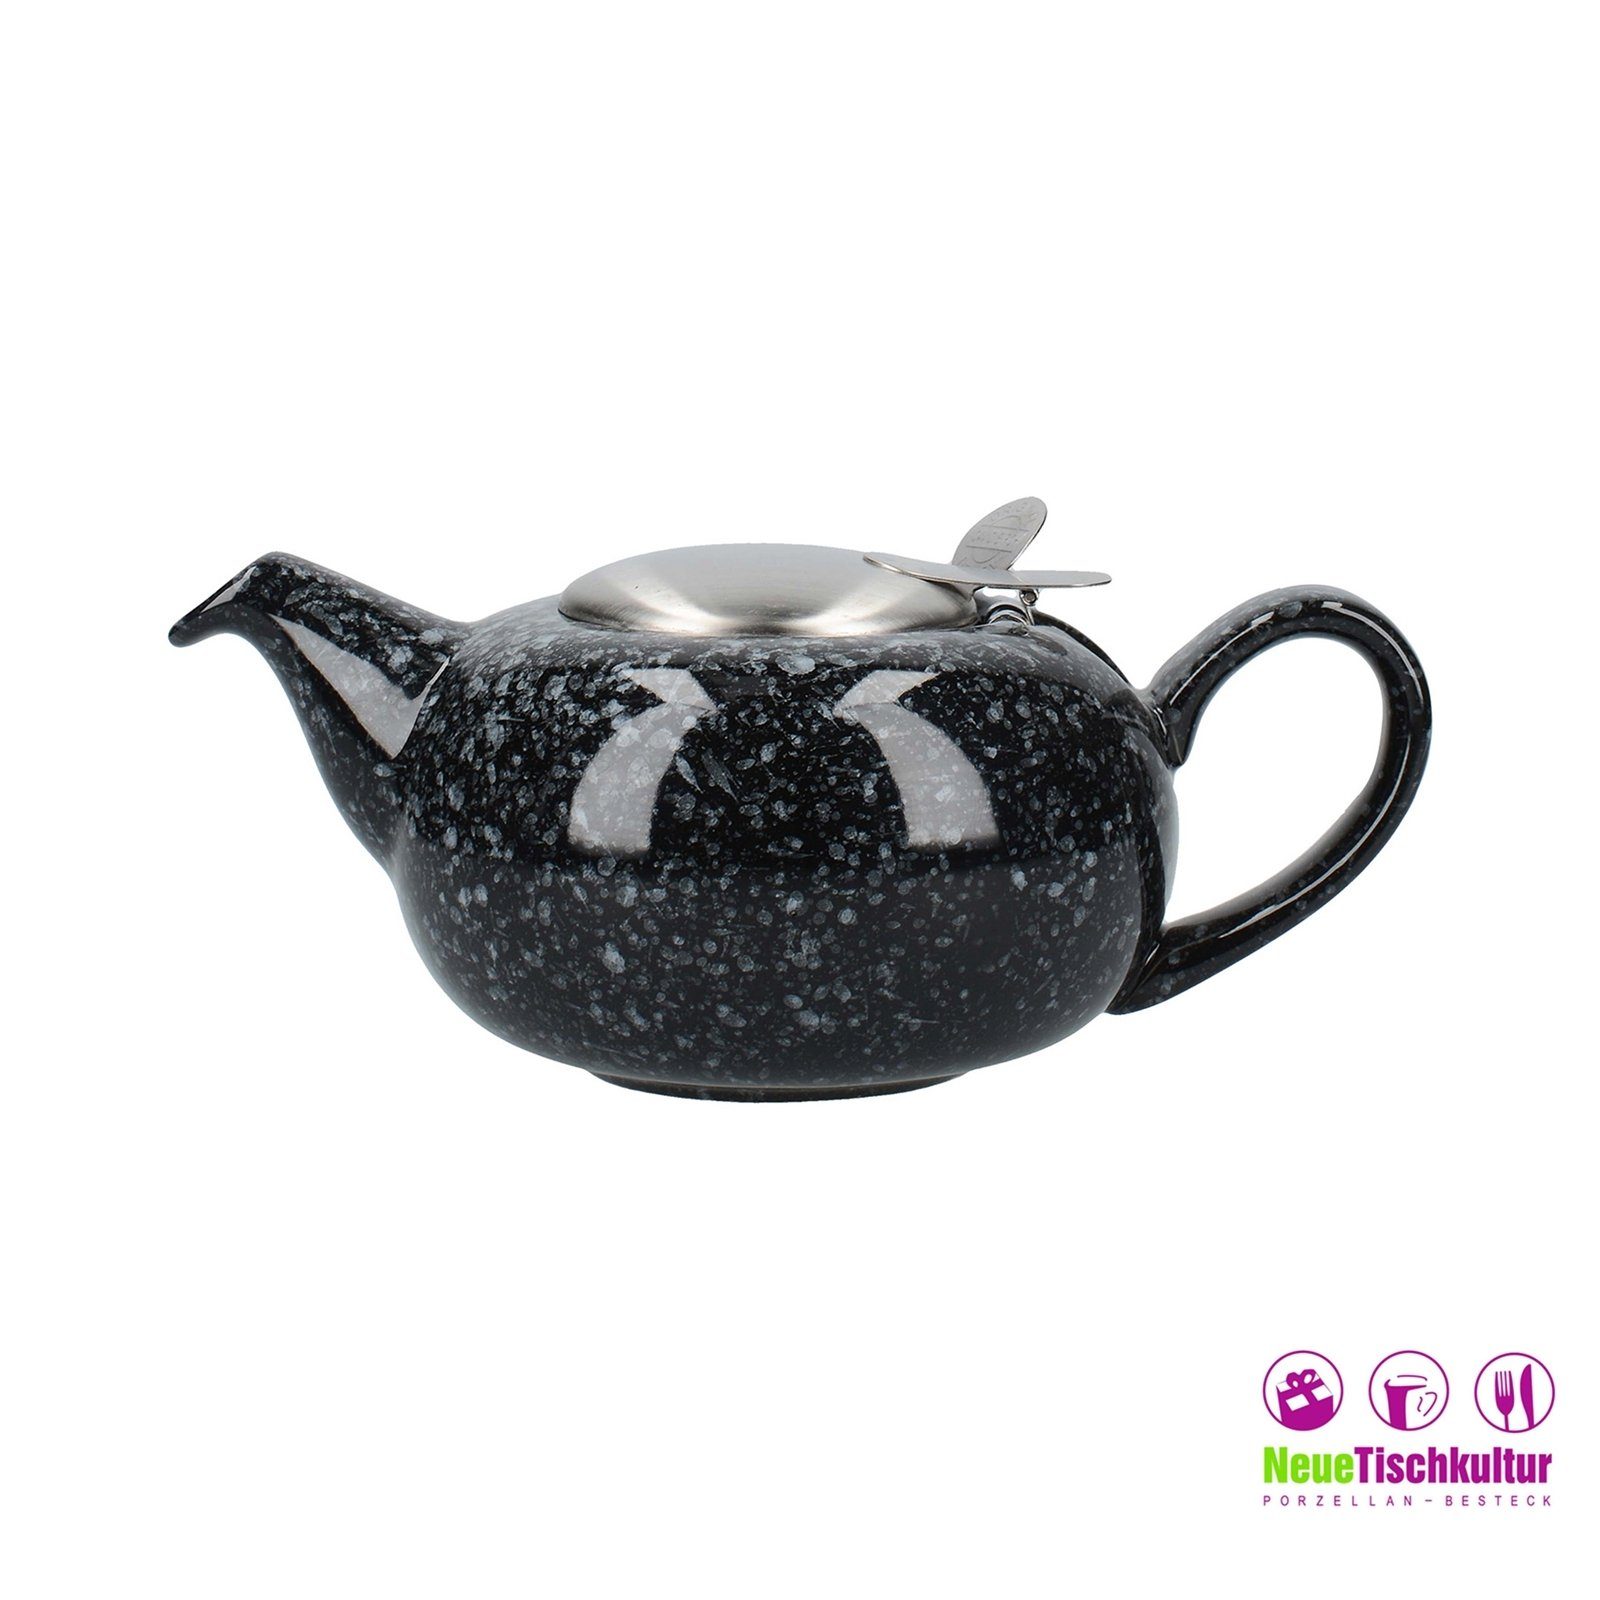 Keramik, Teekanne 500 mit Sieb, marmoriert Tassen Schwarz 2 ml, Teekanne l Neuetischkultur 0.5